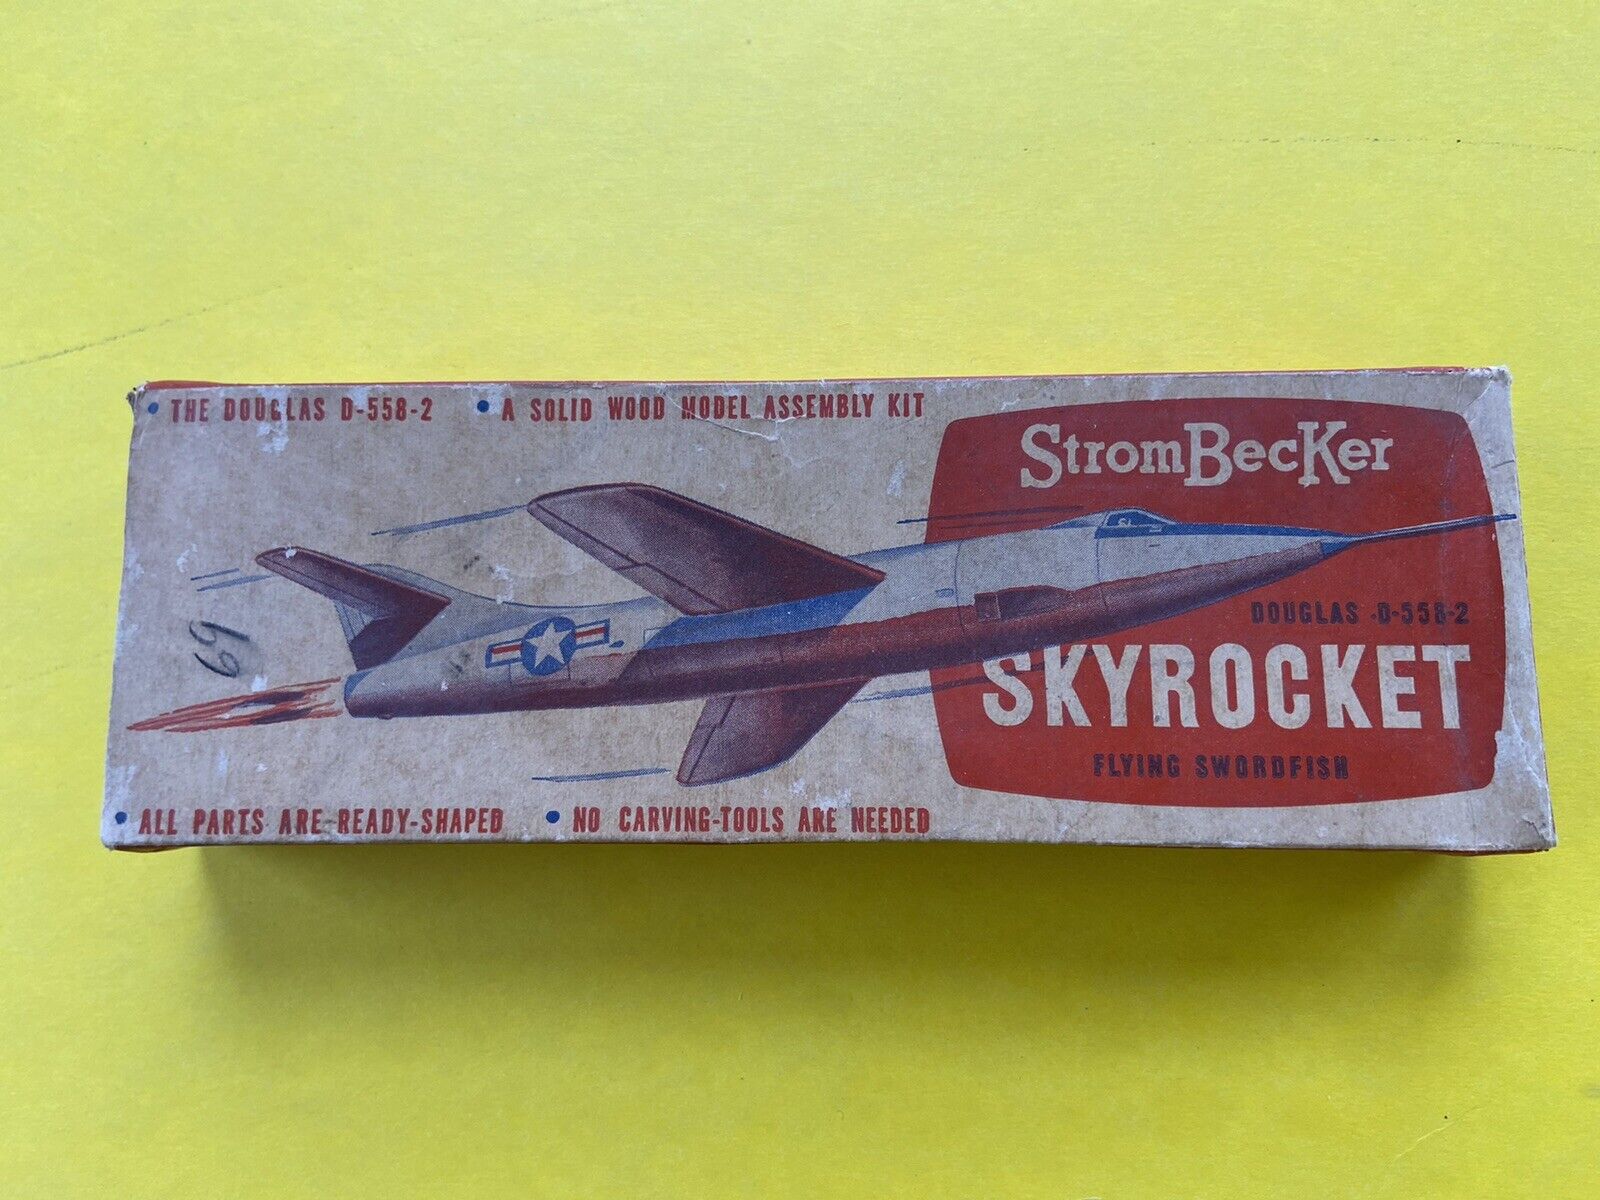 Vintage Strombecker Douglas D-558-2 Skyrocket